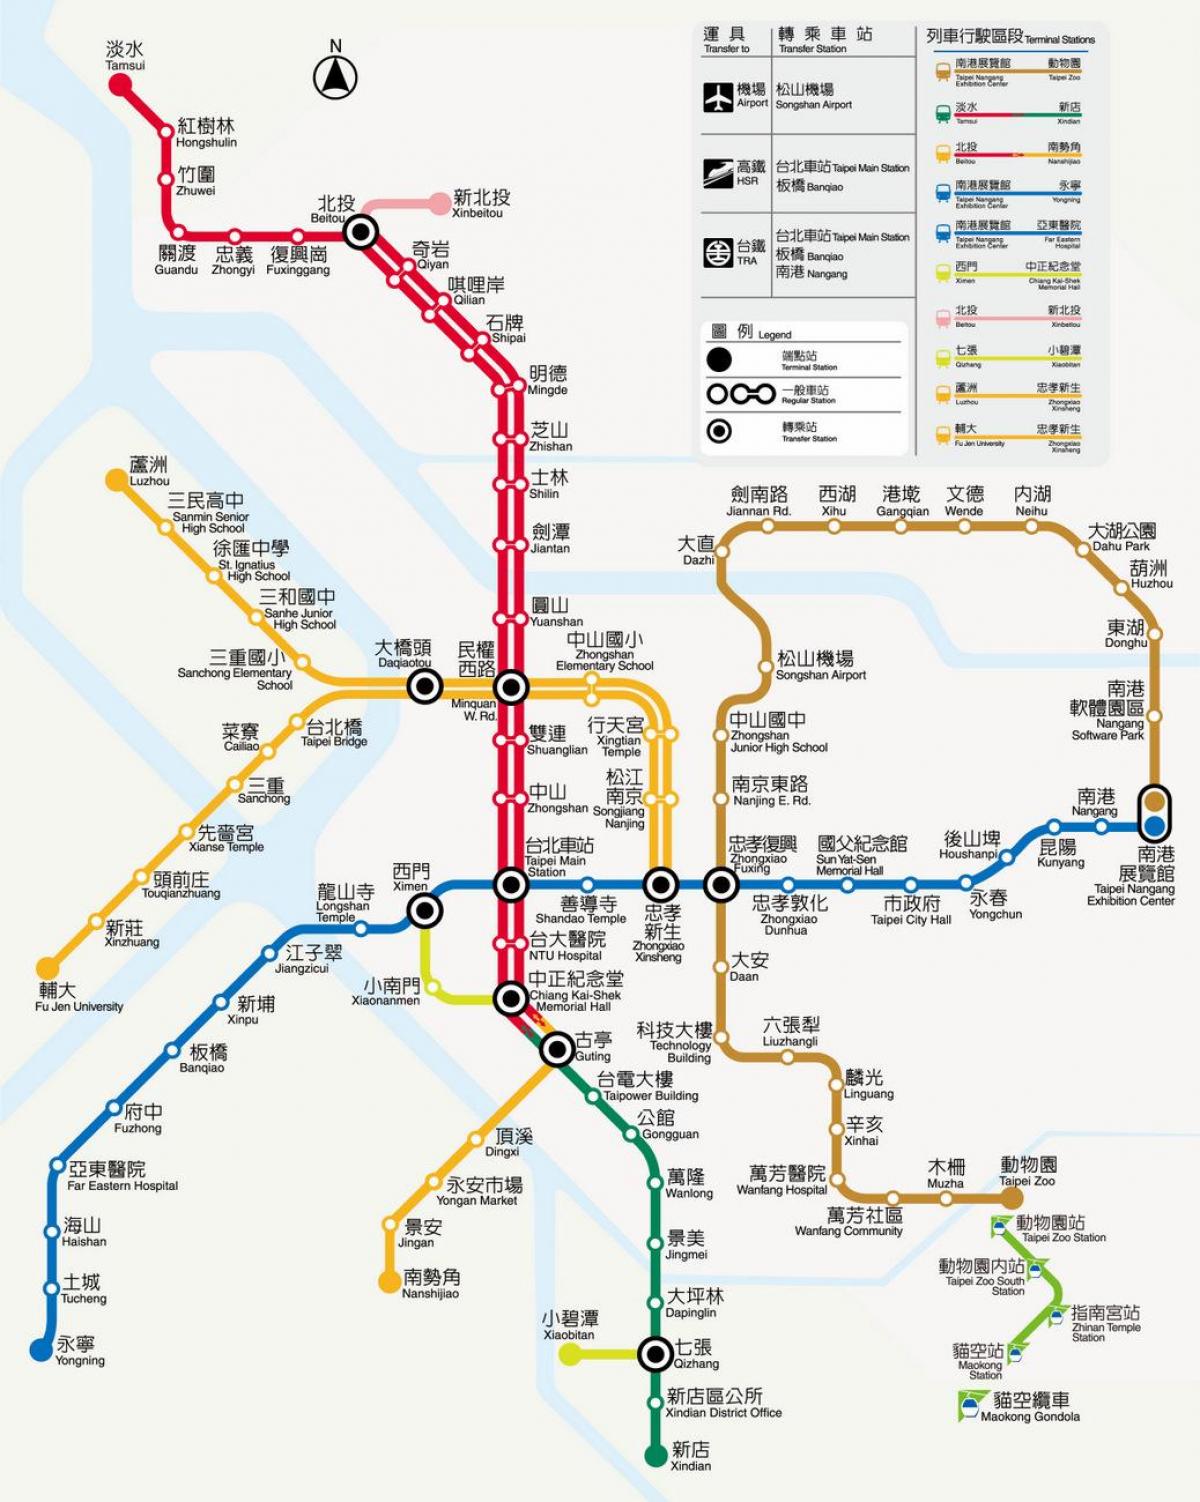 kort af Taipei - réttir 